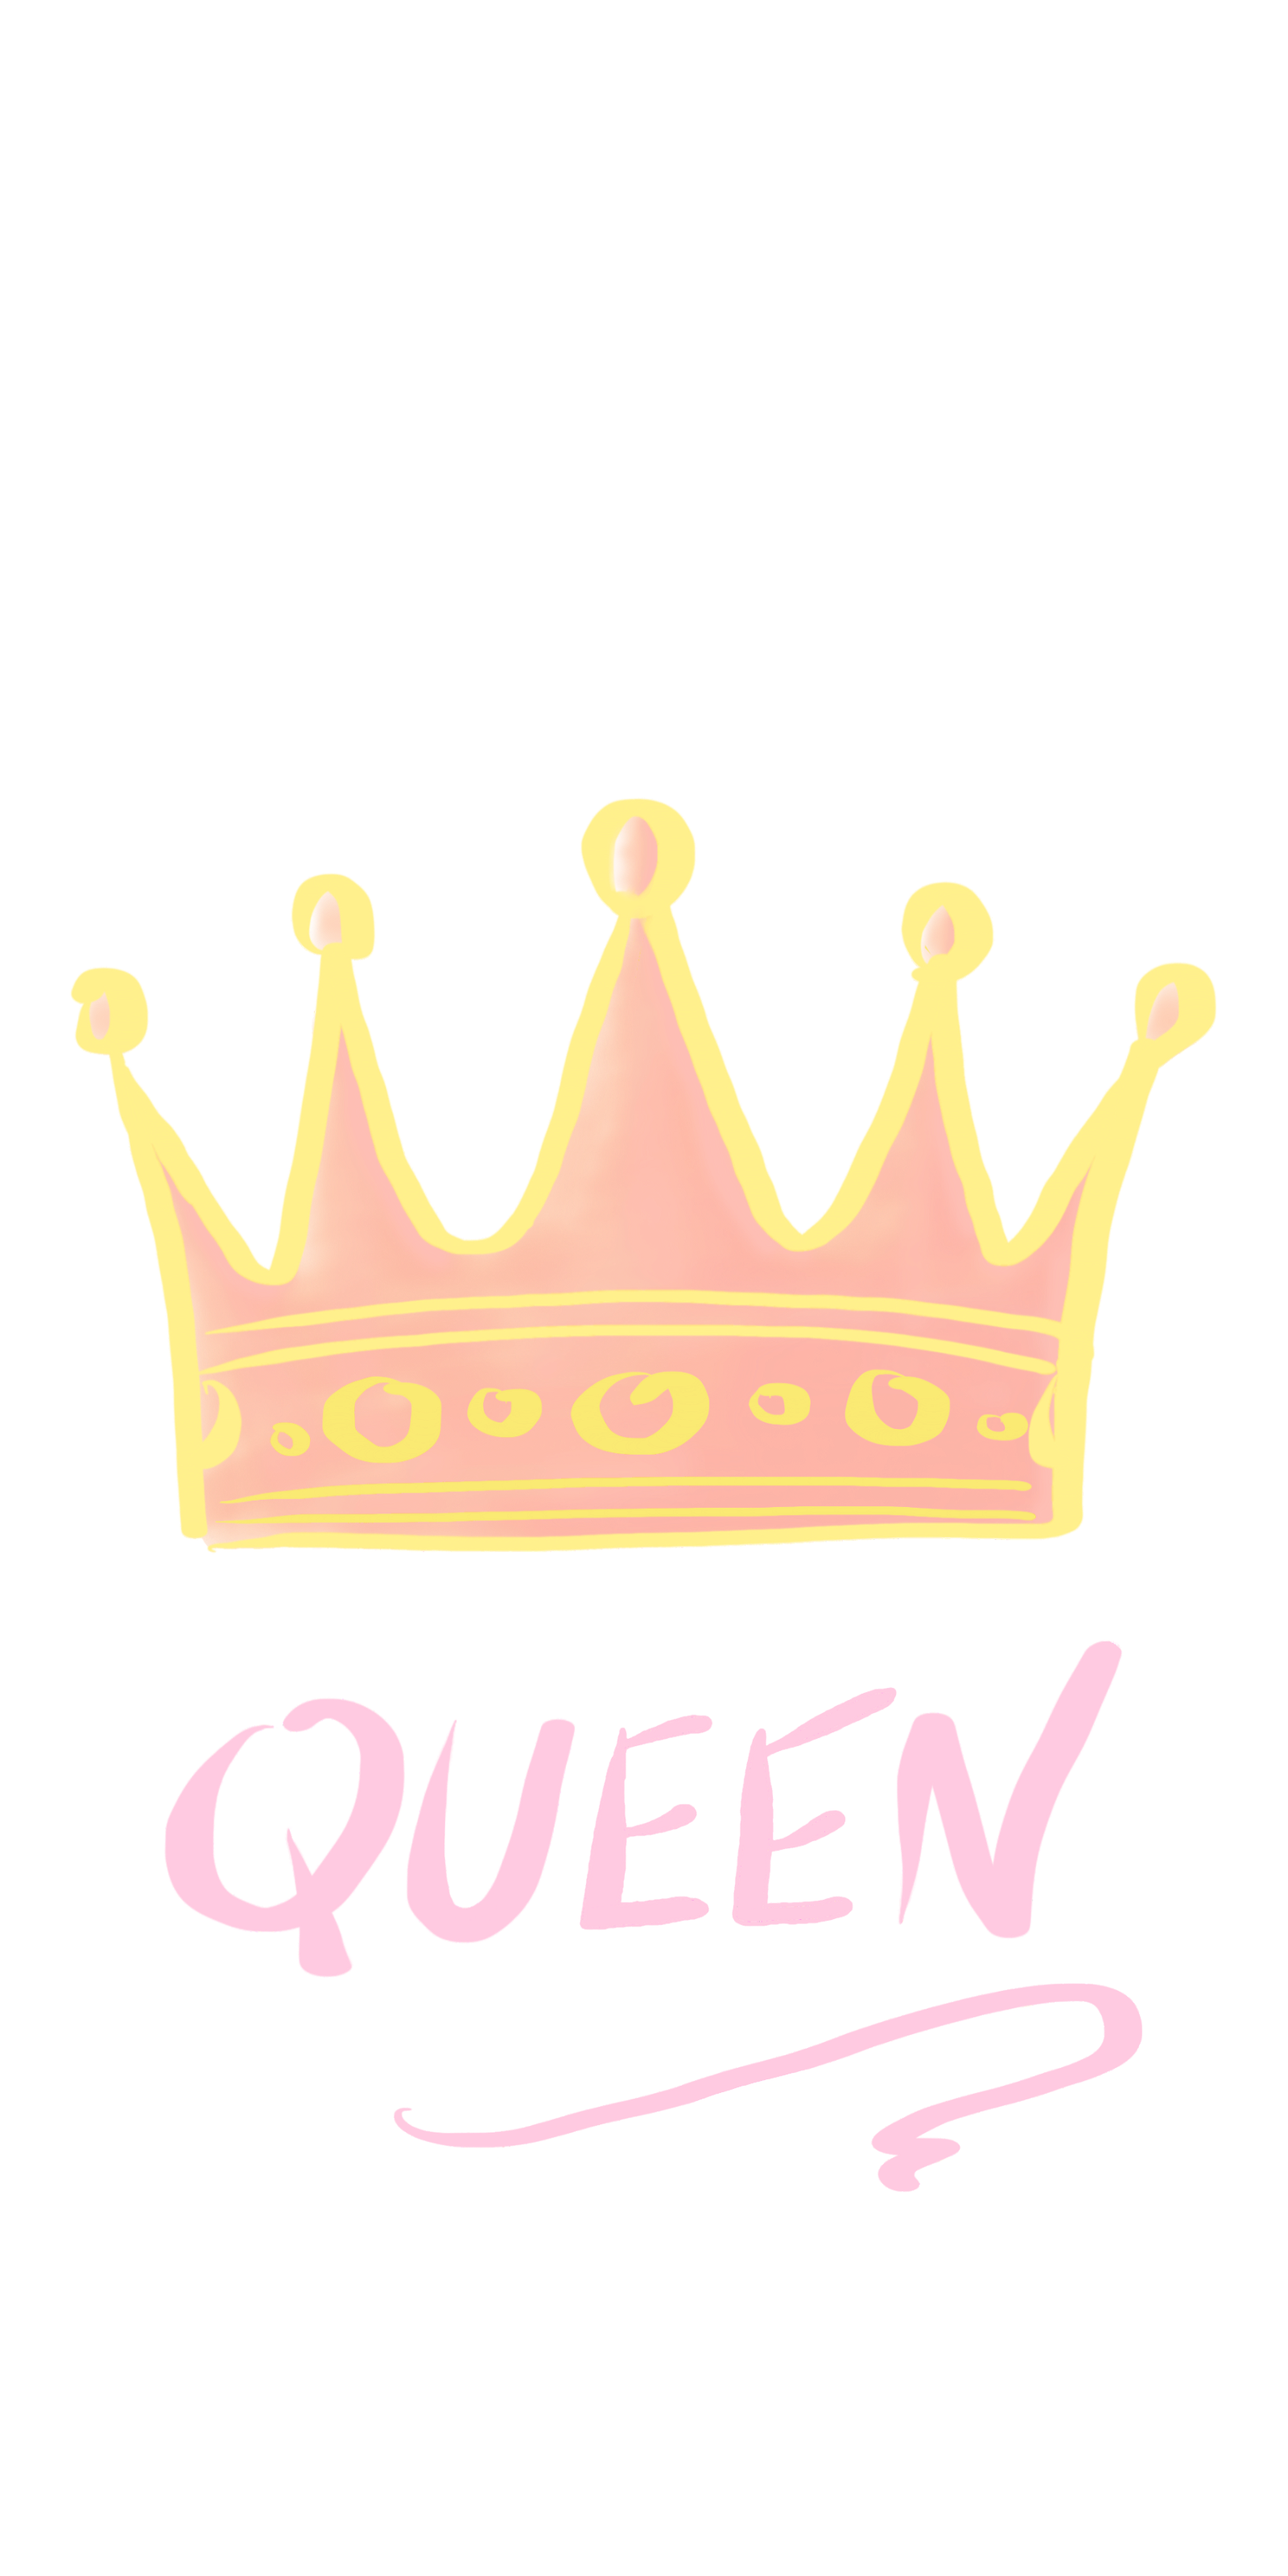 Free Queen Crown Wallpaper, Queen Crown Wallpaper Download - WallpaperUse -  1